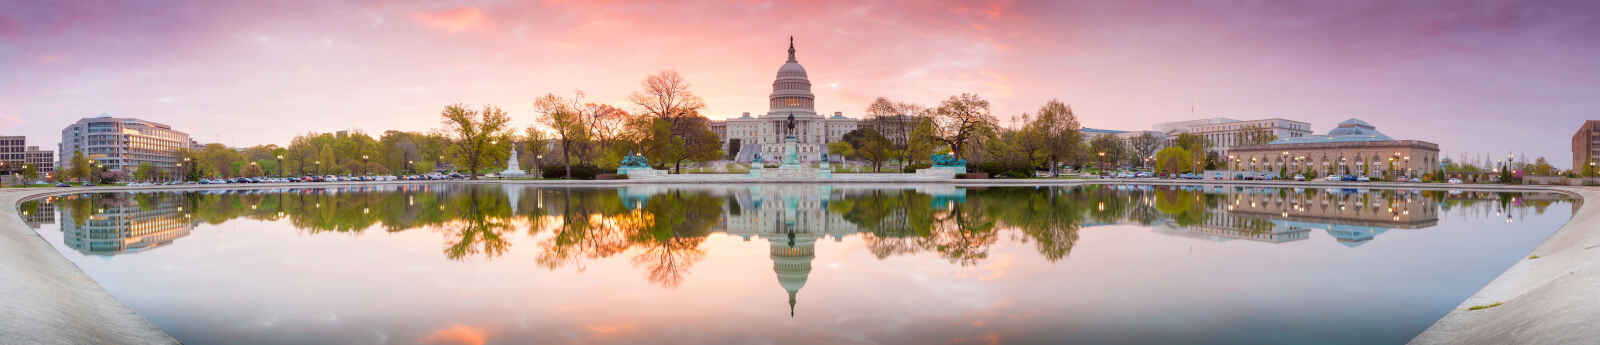 Vue panoramique sur le Capitol, Washington DC, États-Unis